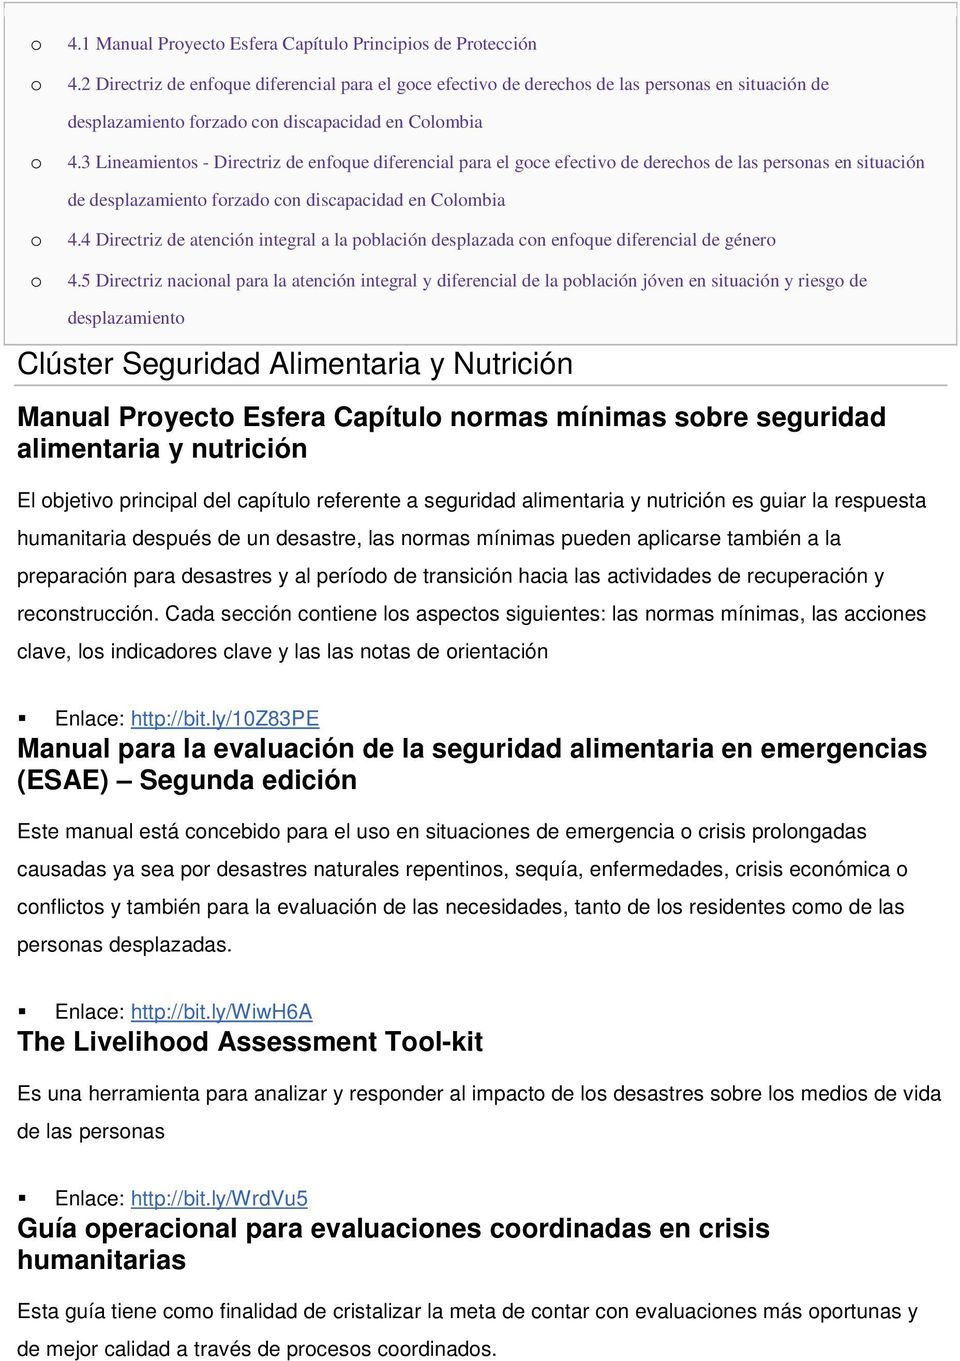 3 Lineamients - Directriz de enfque diferencial para el gce efectiv de derechs de las persnas en situación de desplazamient frzad cn discapacidad en Clmbia 4.